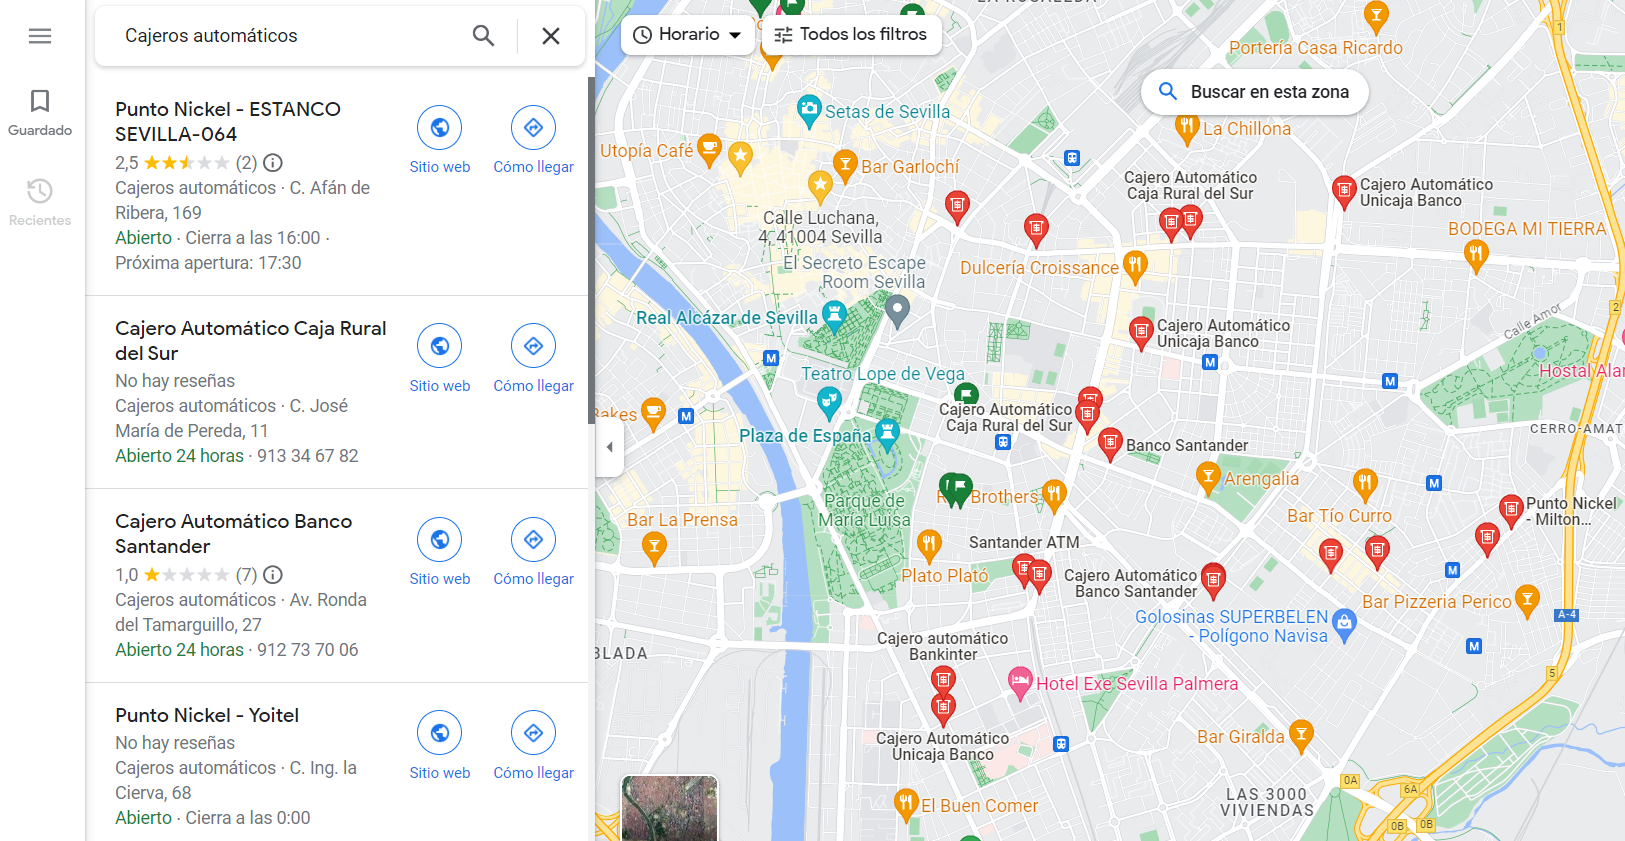 atm cashiers google maps